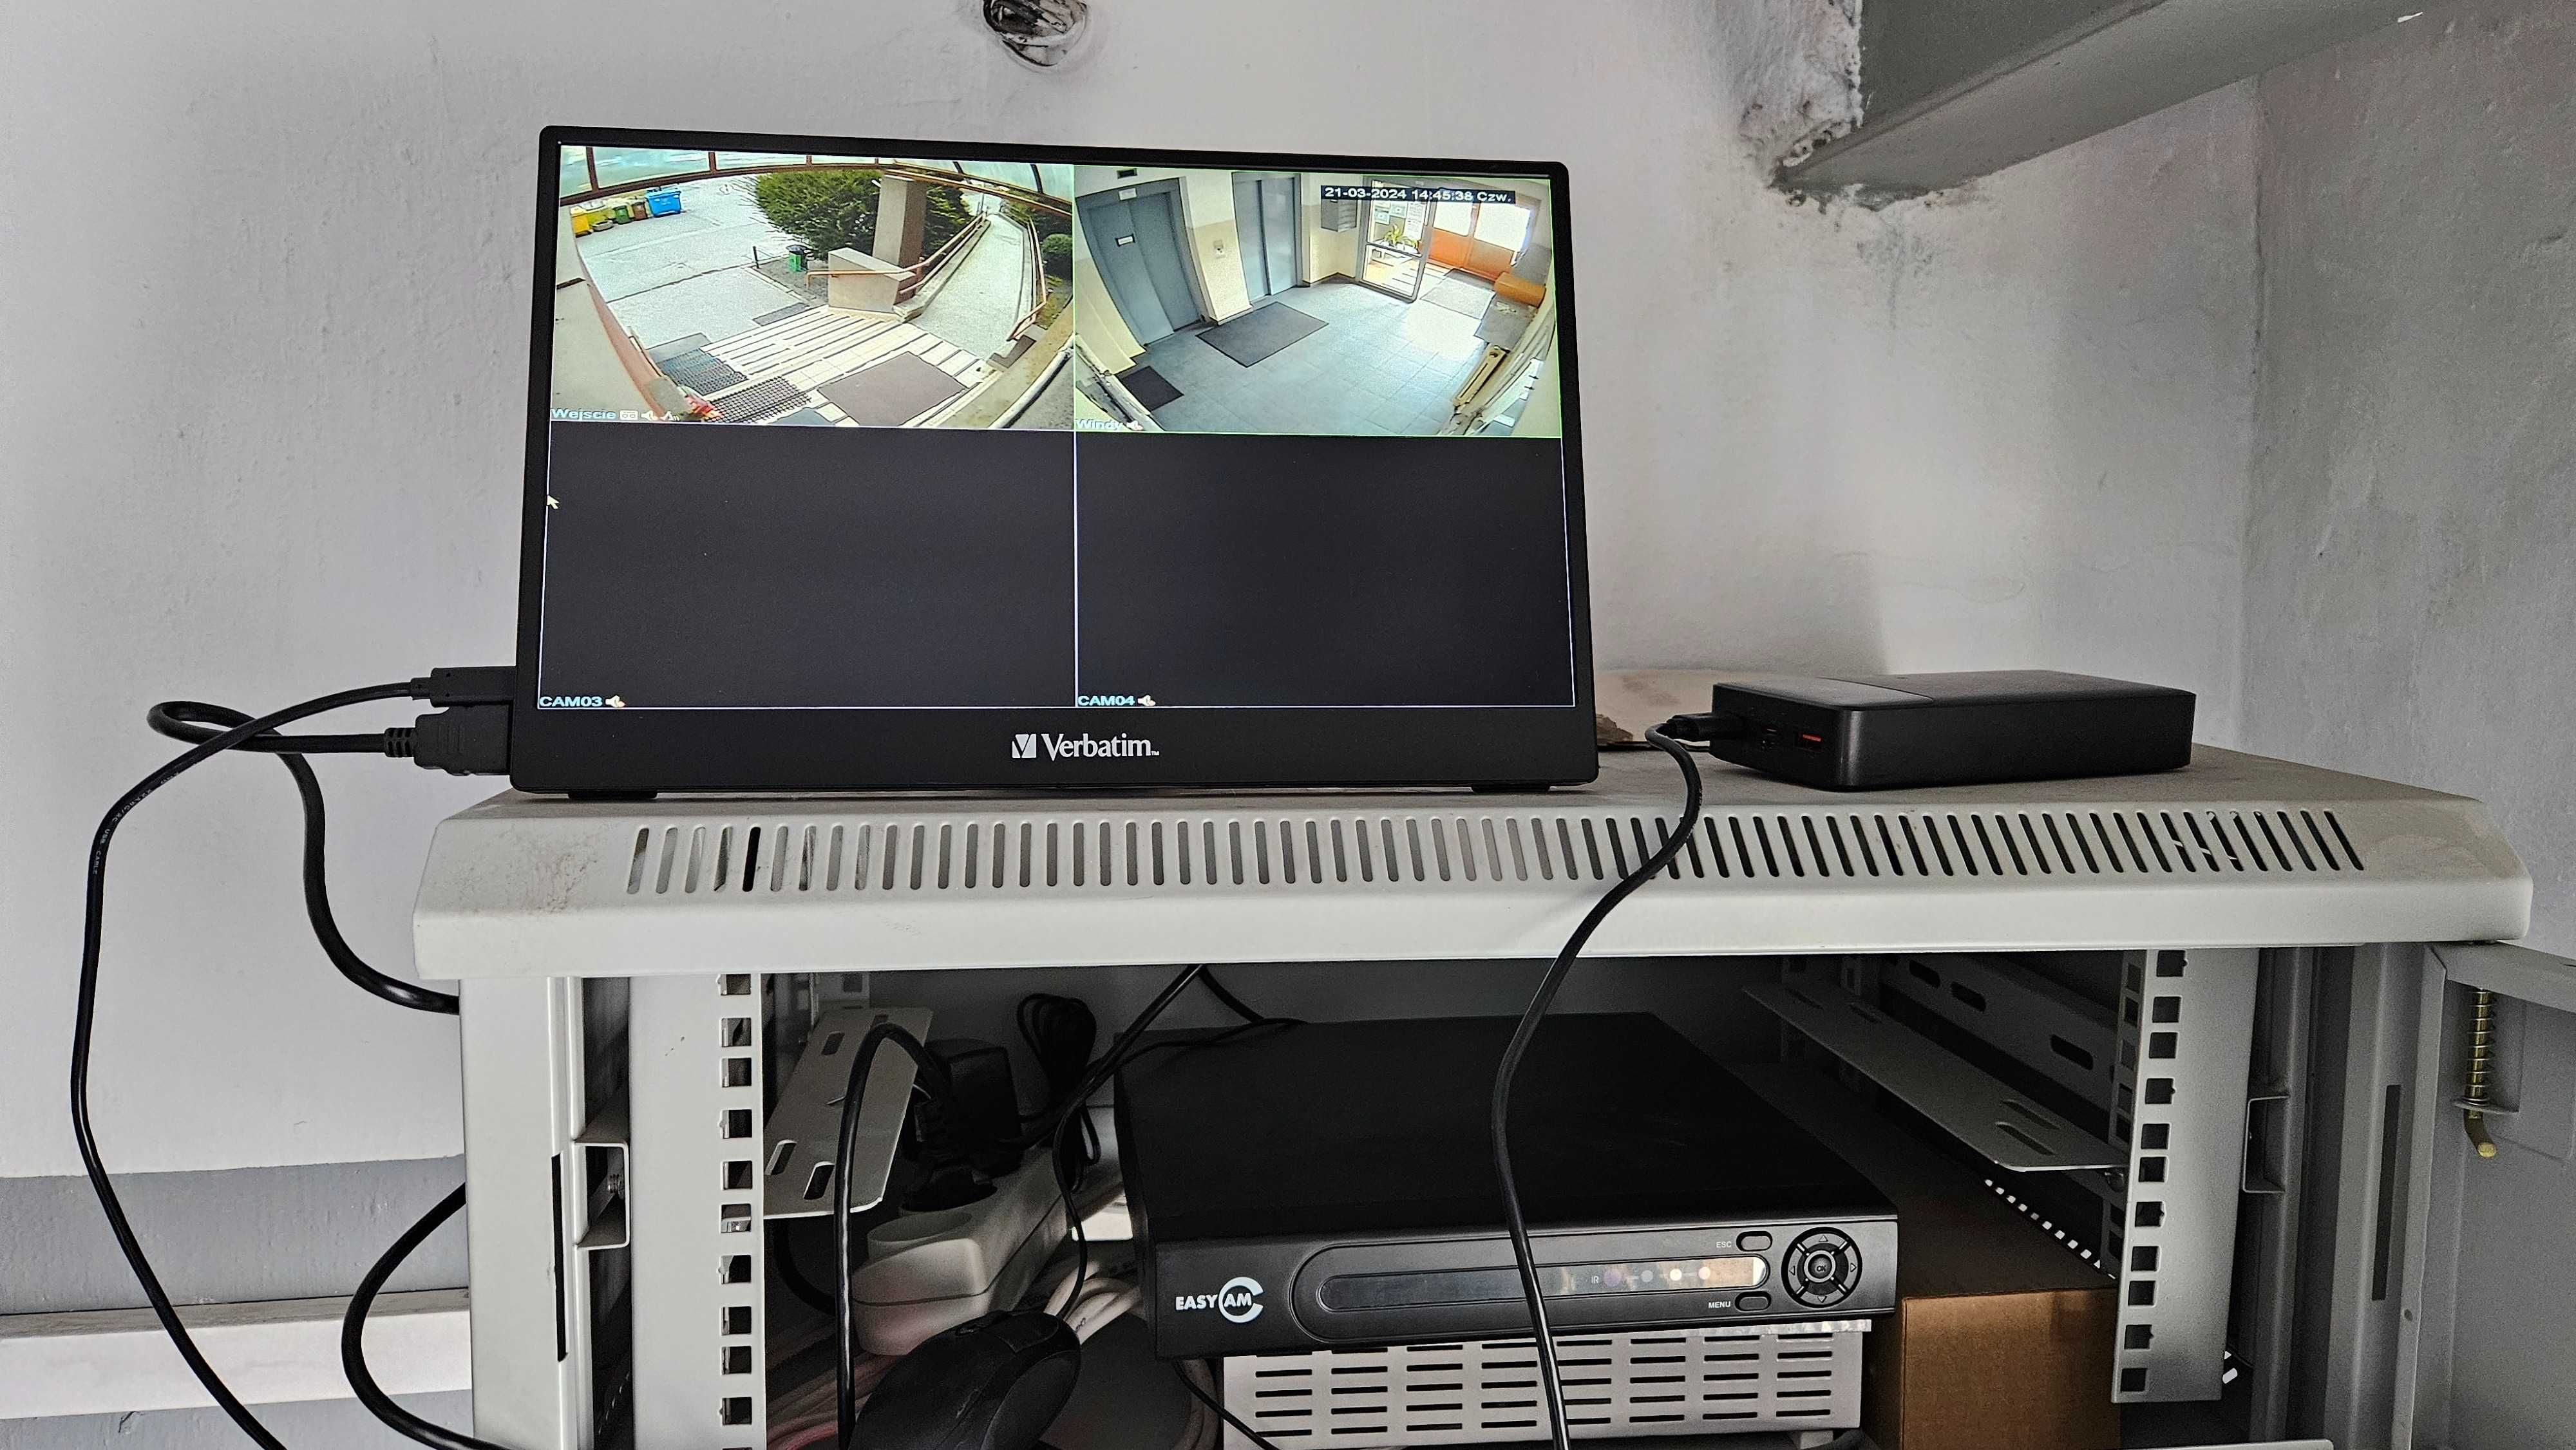 Instalacja Systemów monitoringu, montaż kamer CCTV konserwacja naprawa